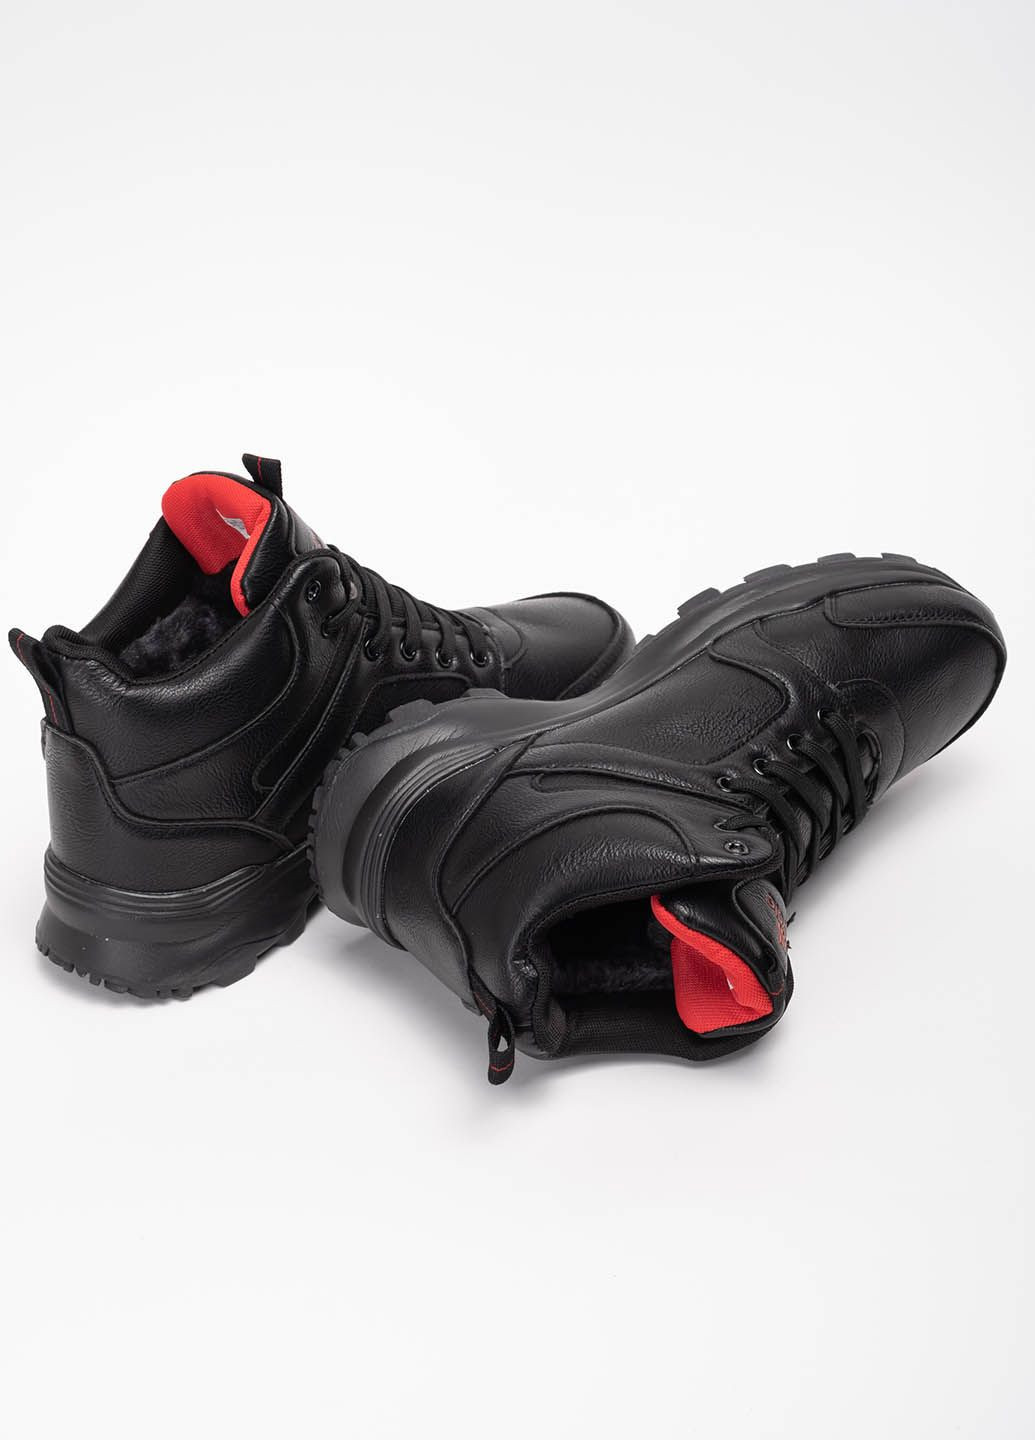 Черные зимние ботинки мужские спортивные 342373 Power